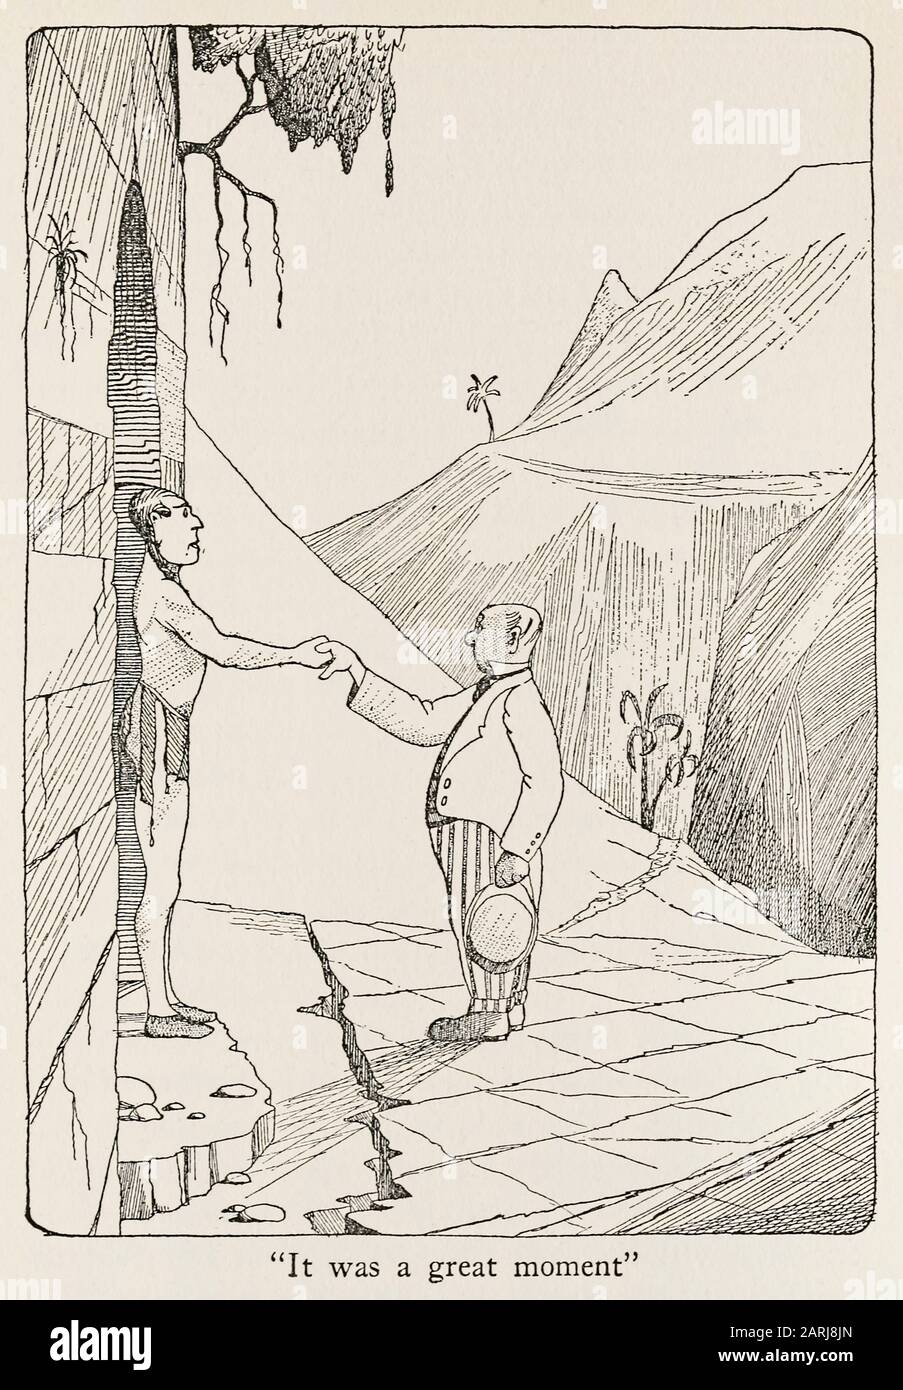 “fue un gran momento” ilustración de los viajes del Doctor Dolittle (1922) escrita e ilustrada por Hugh Lofting (1886-1947). La segunda novela sobre un Doctor que puede hablar con animales. Consulte más información a continuación. Foto de stock